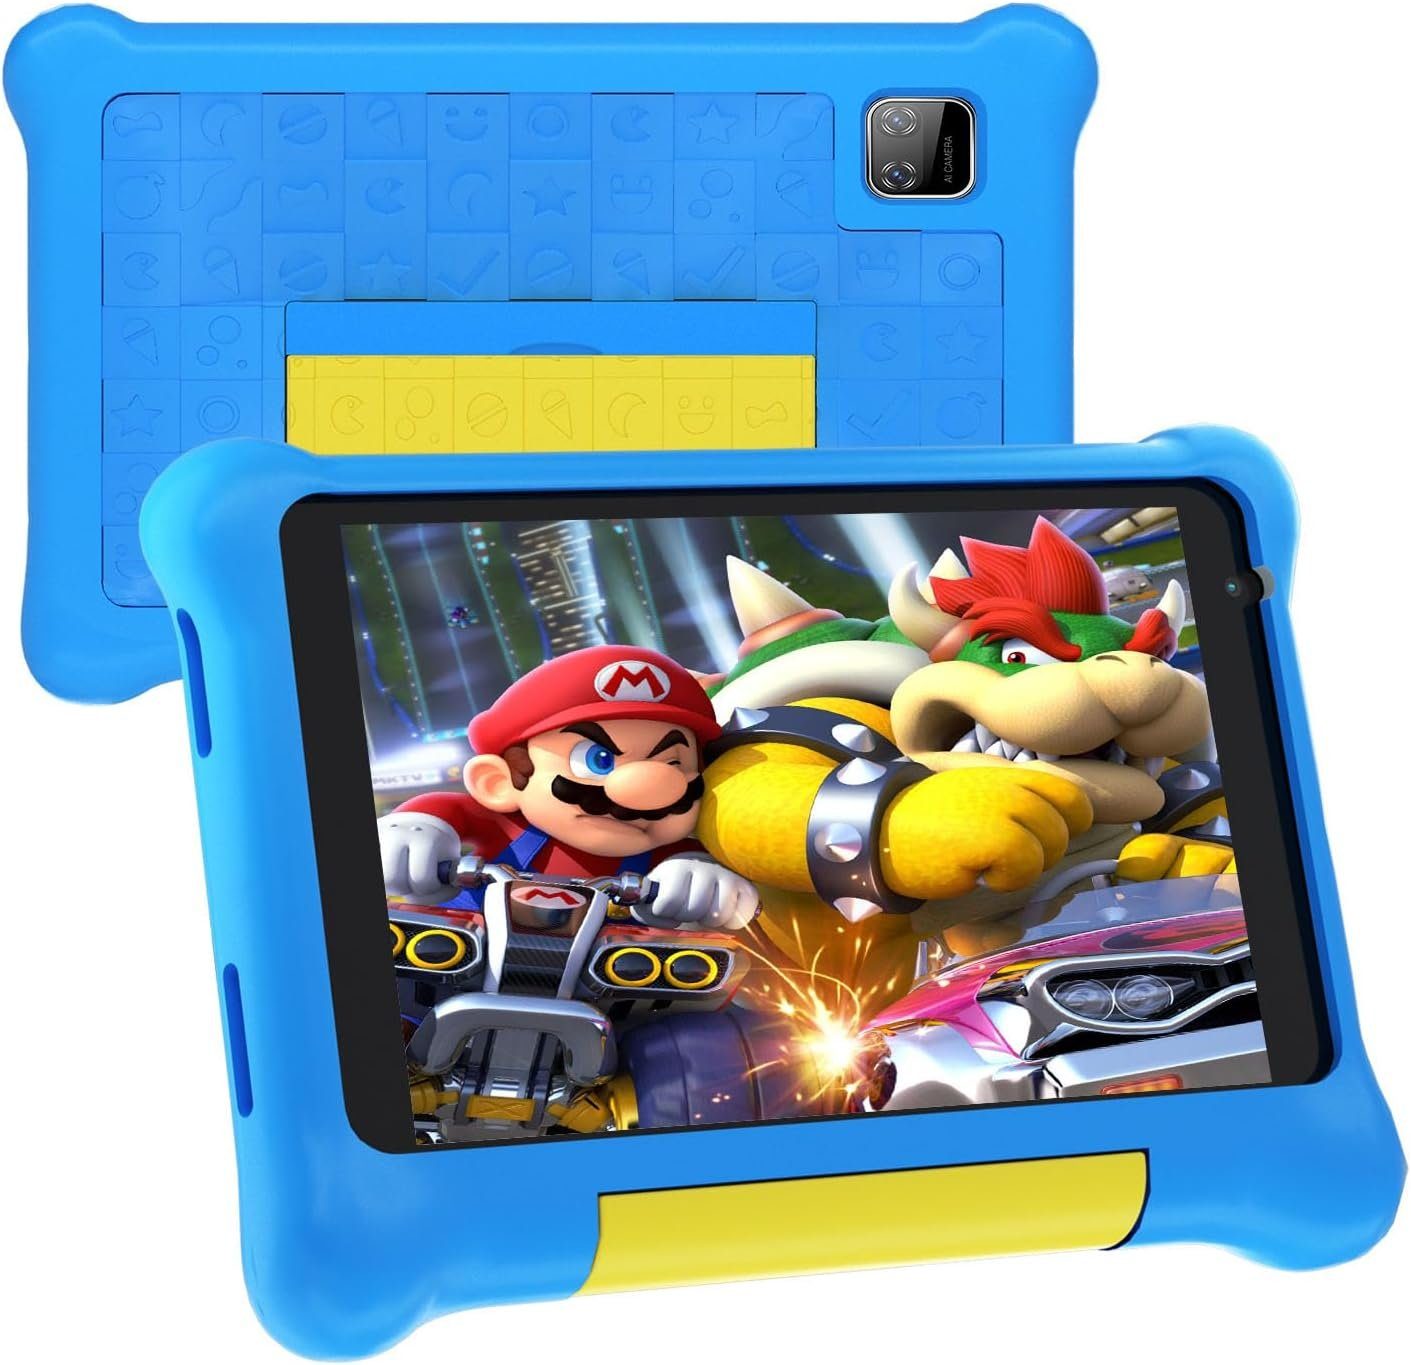 Hotlight Kinder 2GB RAM mit Quad Core Tablet (7", 32 GB, Andriod 12, mit 128GB Erweiterbar, Wi-Fi, Bluetooth, Type-C, Kids Tablet)